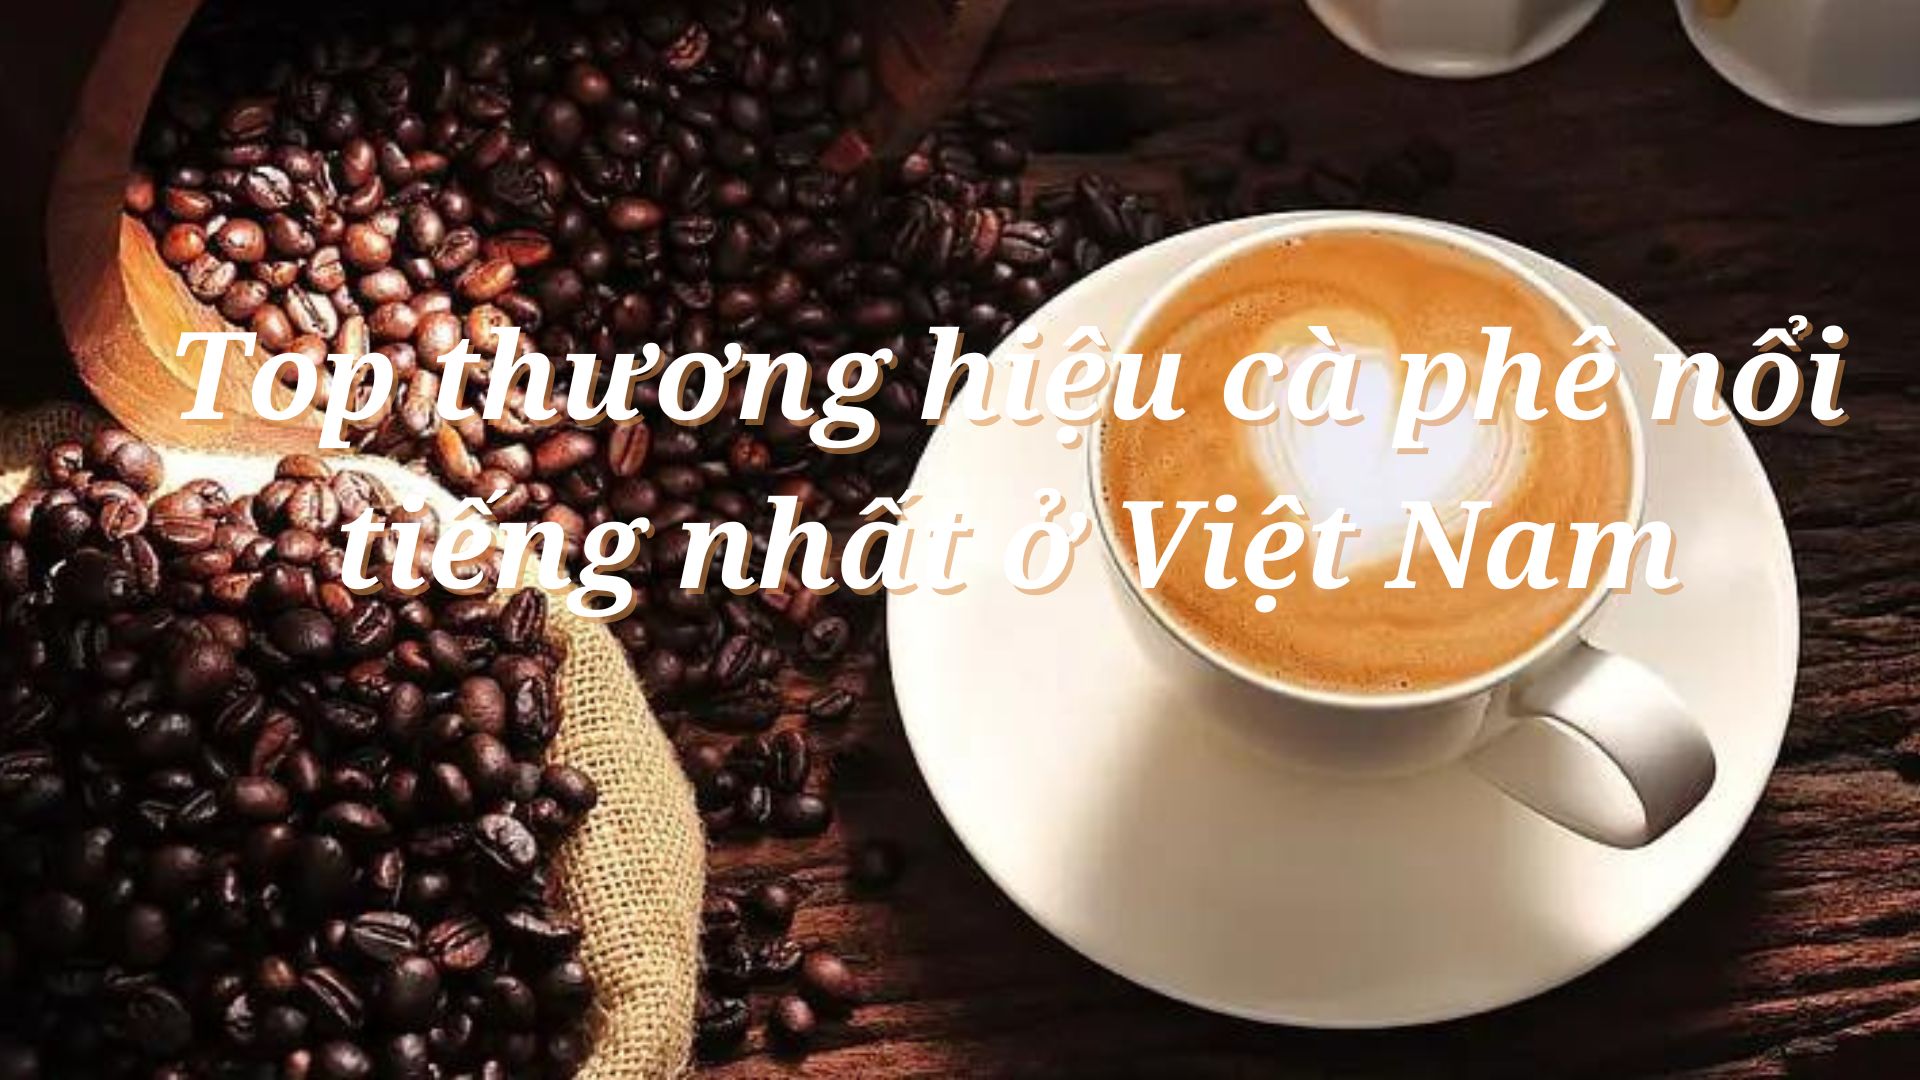 Top thương hiệu cà phê nổi tiếng nhất ở Việt Nam